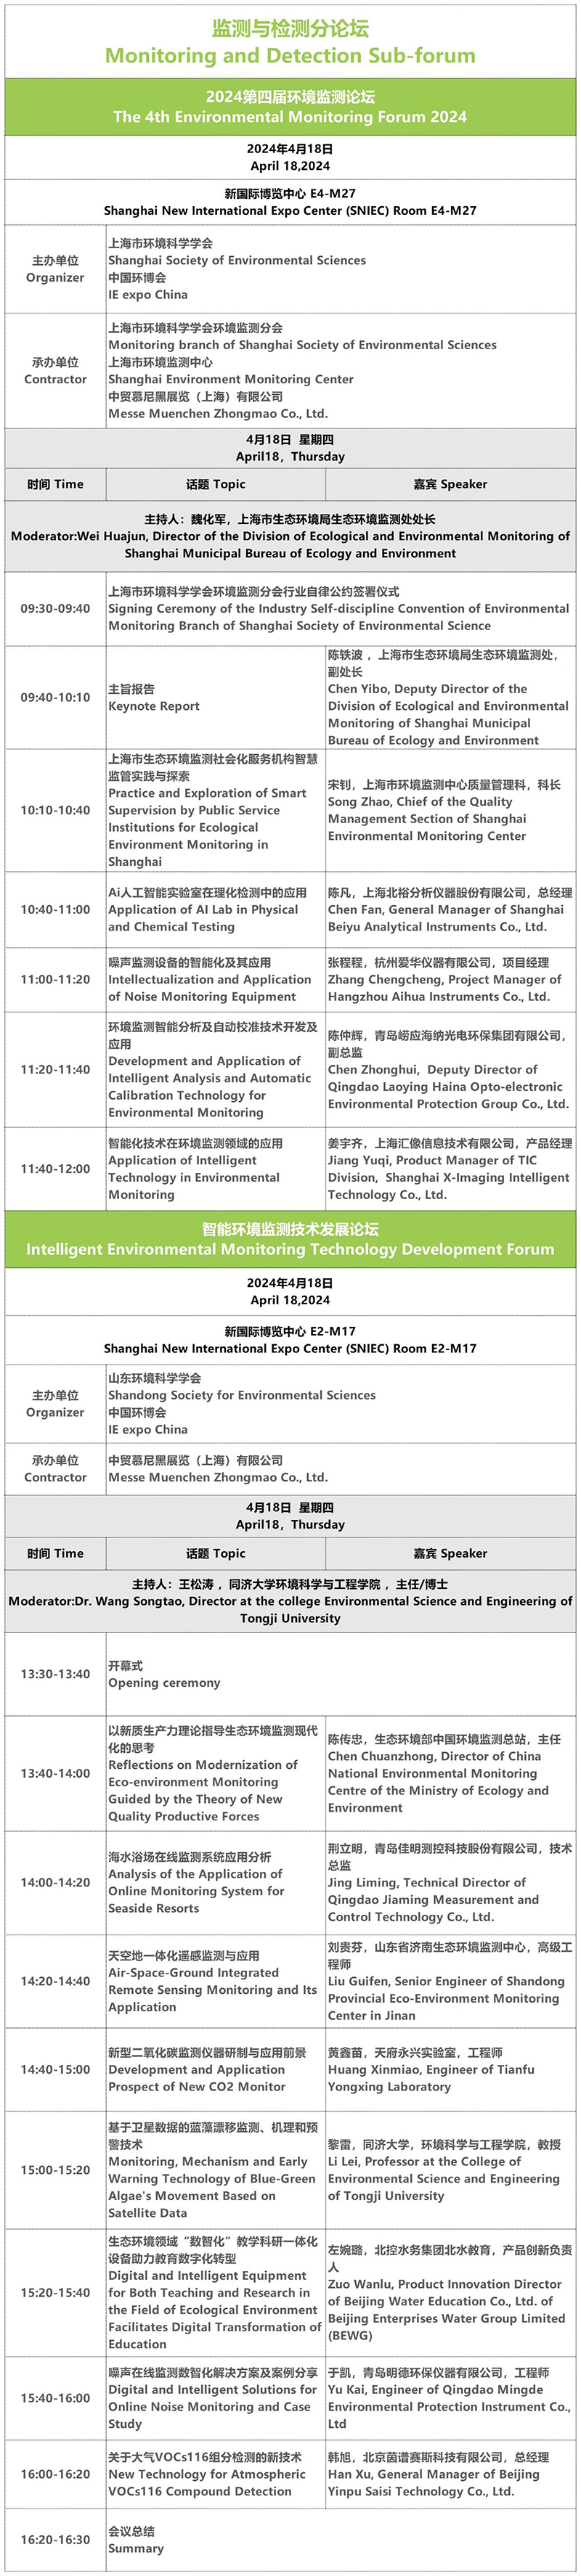 全球第二大环保展即将于4月18日在上海开幕